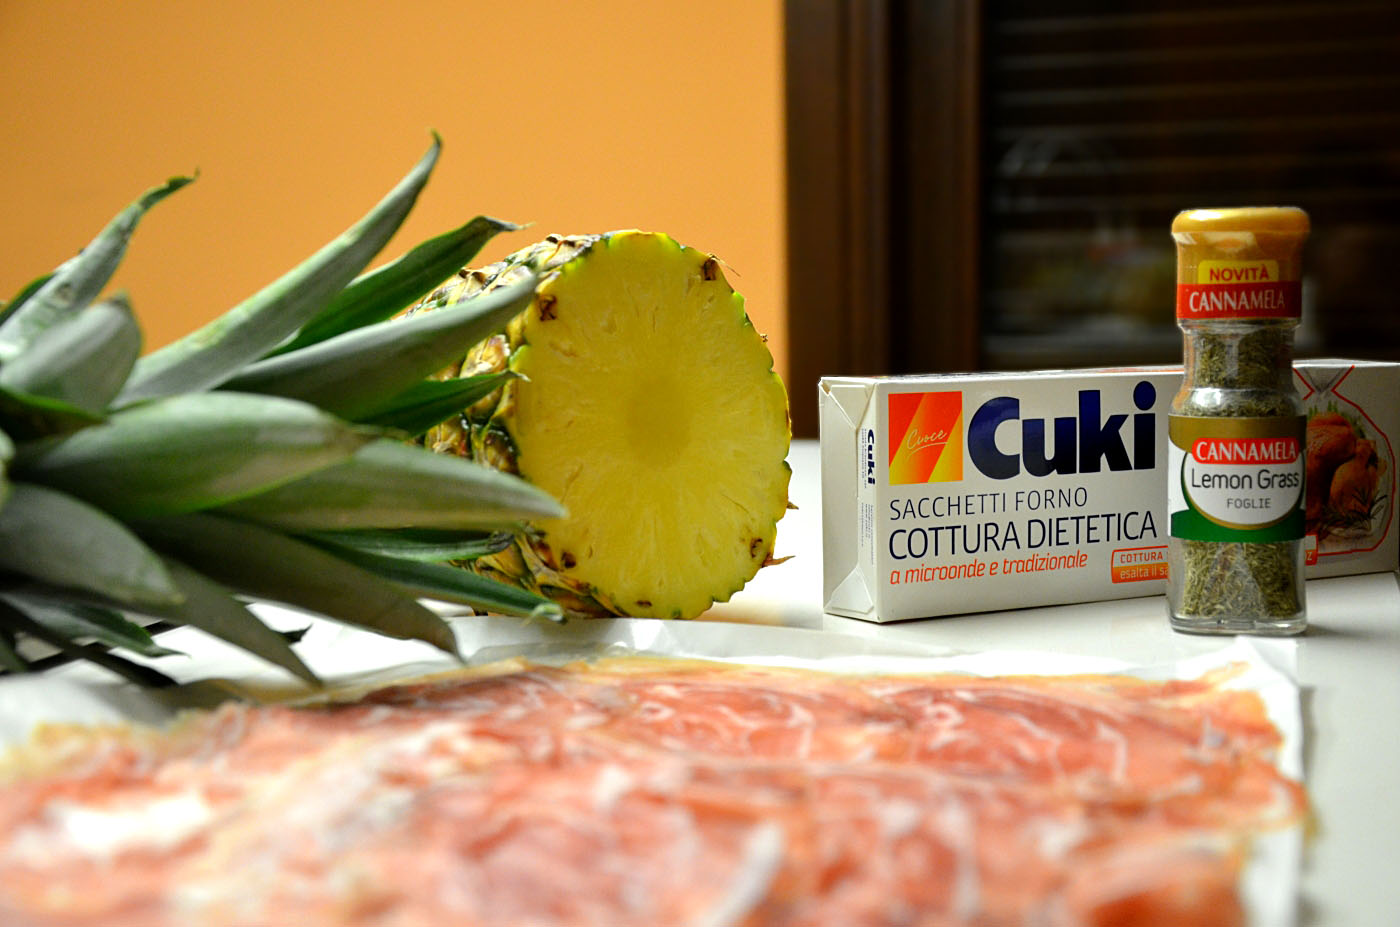 Sacchetti forno CUKI – cottura dietetica! Da provare!!!